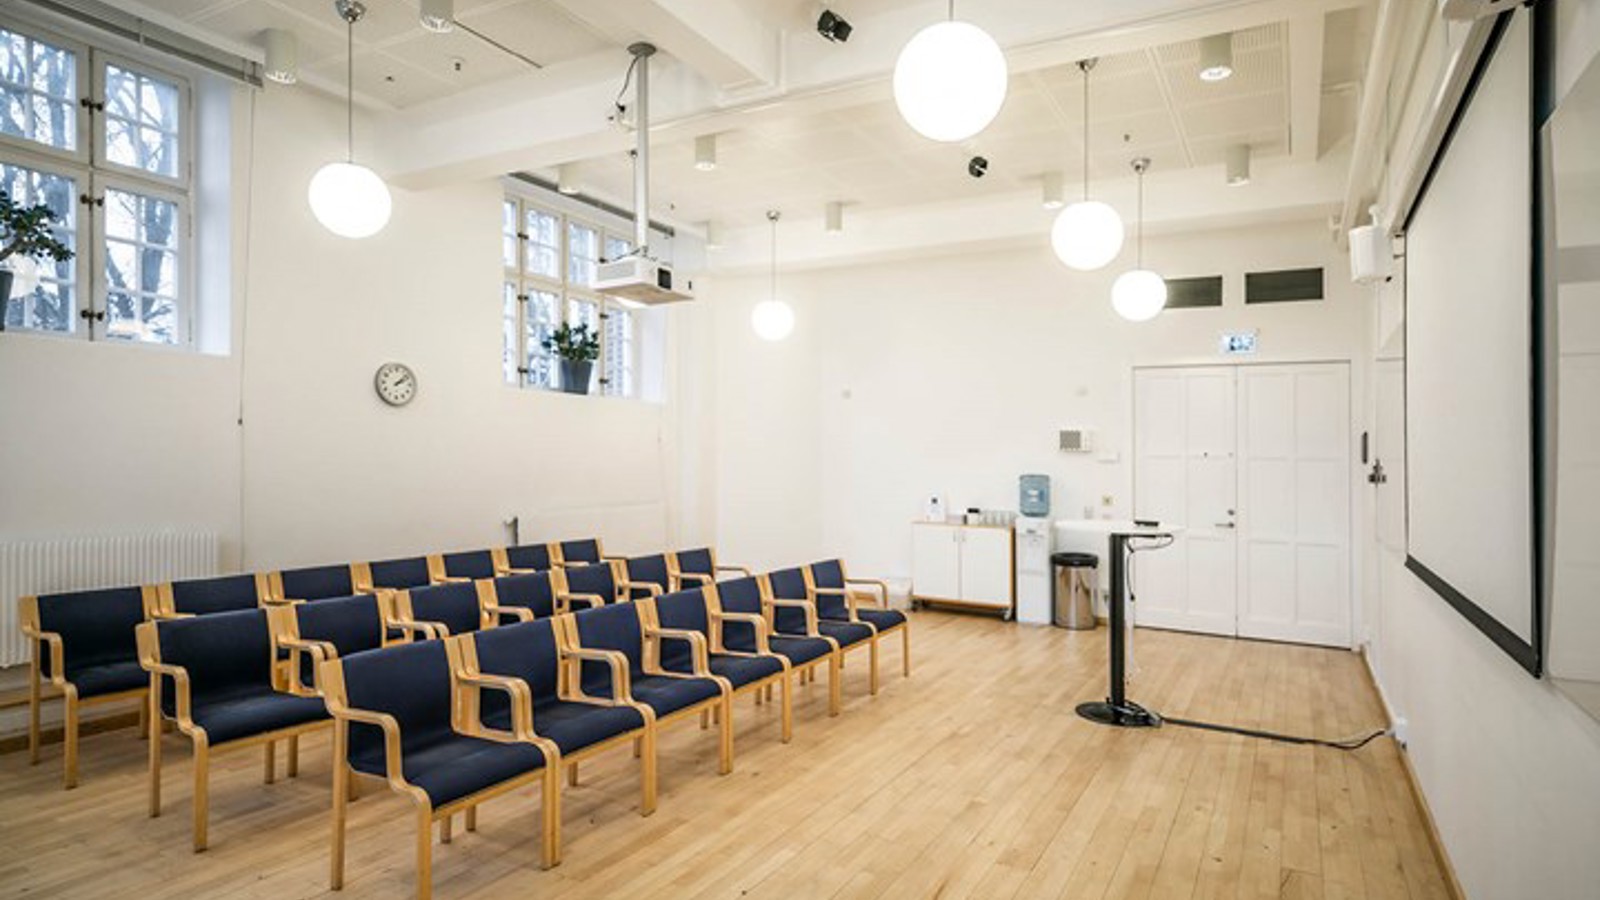 Ljus konferenslokal med mörka stolar i biosittning, projektor och stora fönster